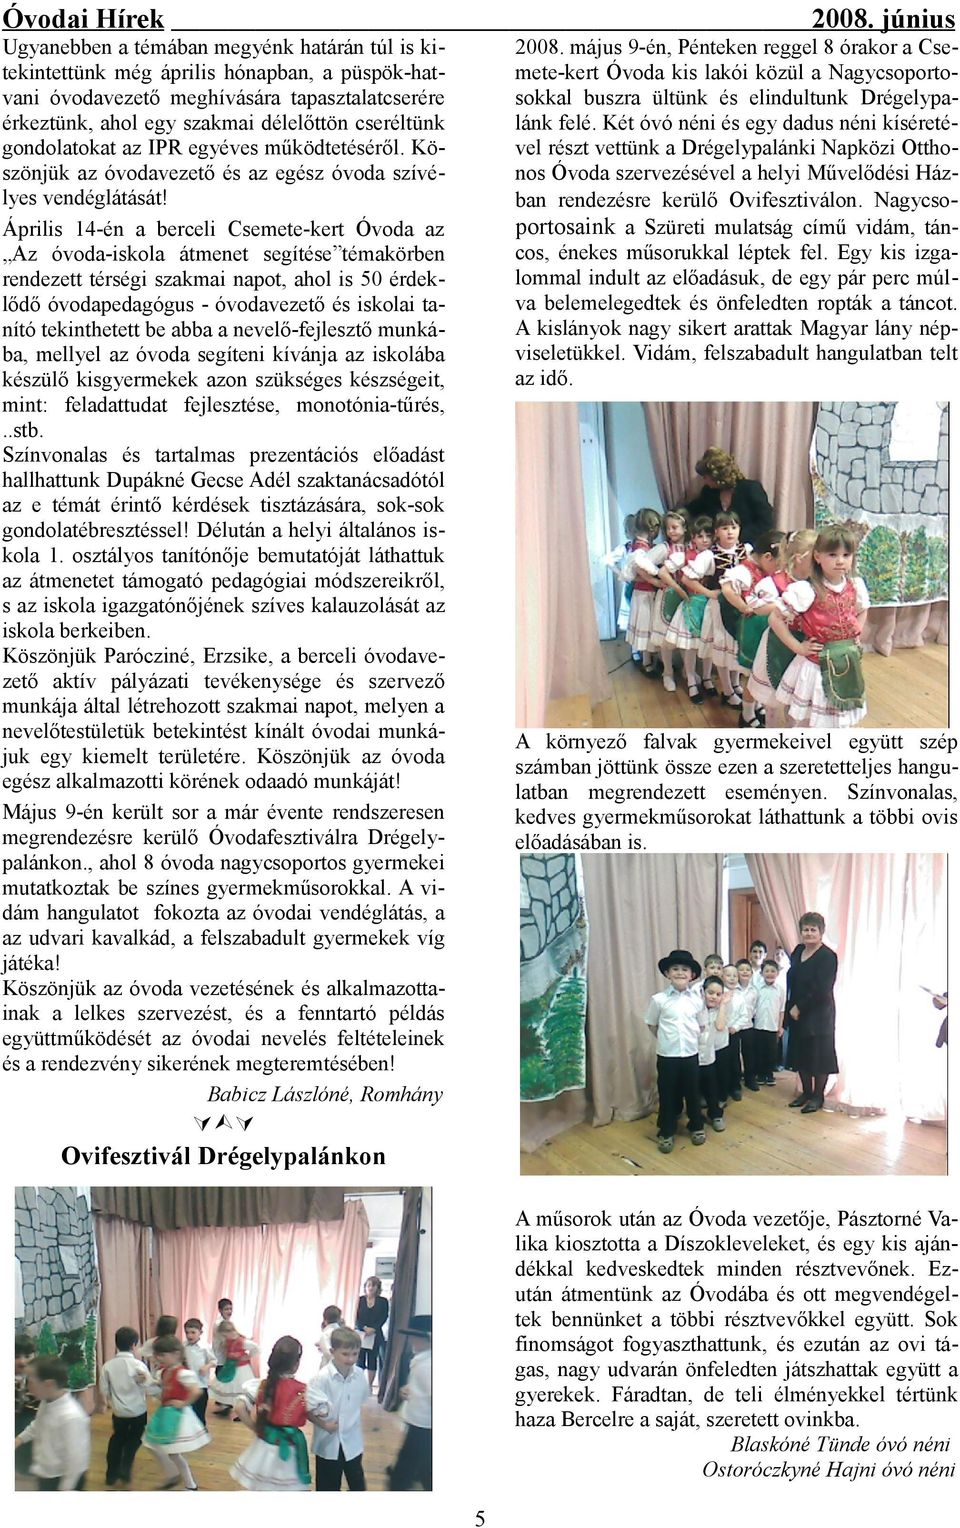 Április 14-én a berceli Csemete-kert Óvoda az Az óvoda-iskola átmenet segítése témakörben rendezett térségi szakmai napot, ahol is 50 érdeklődő óvodapedagógus - óvodavezető és iskolai tanító